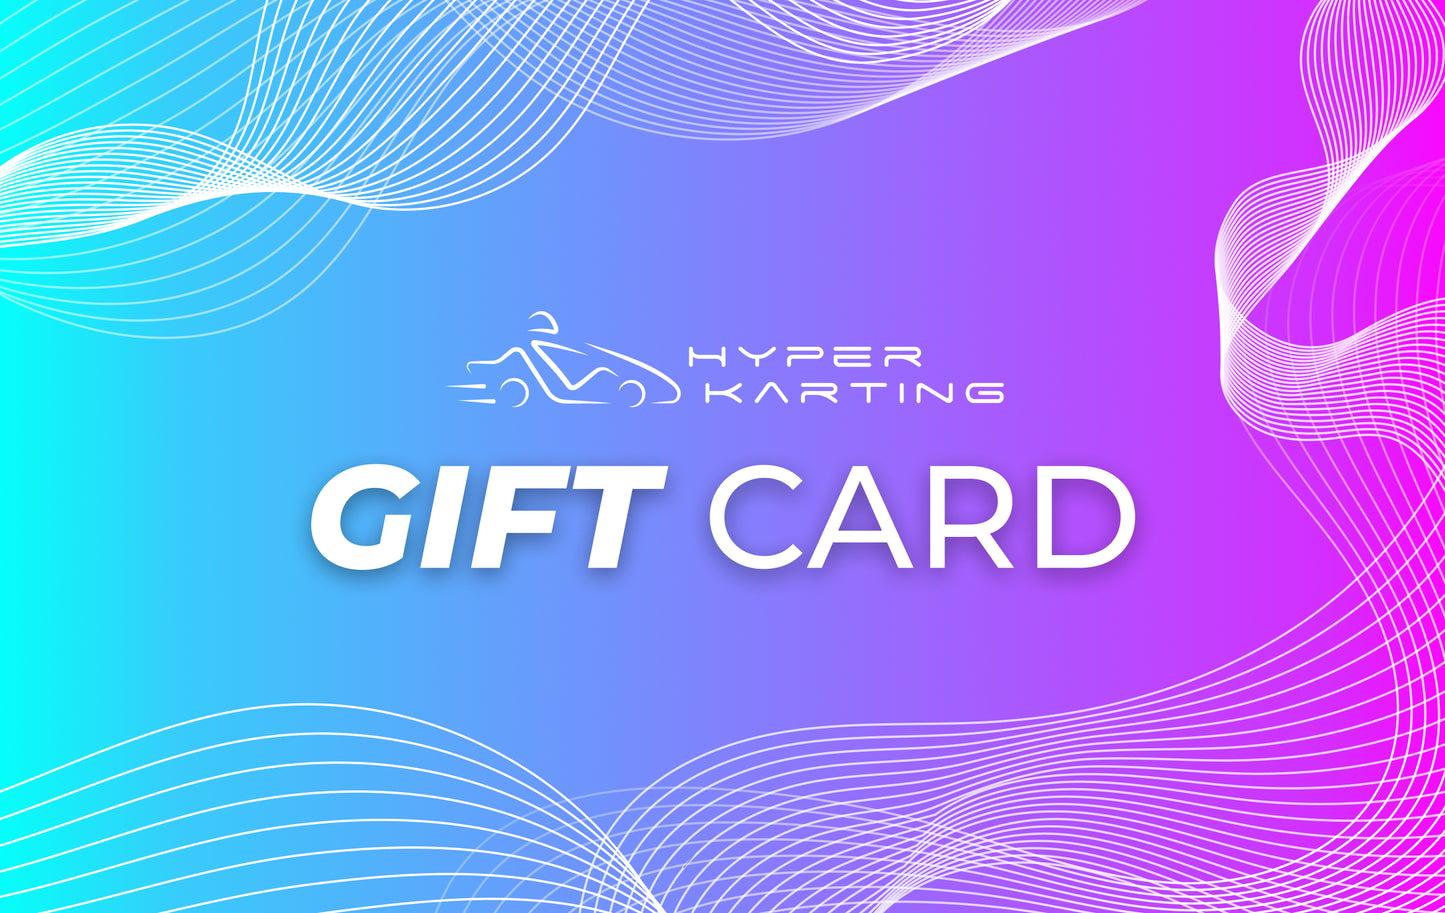 Hyper Karting Gift Card